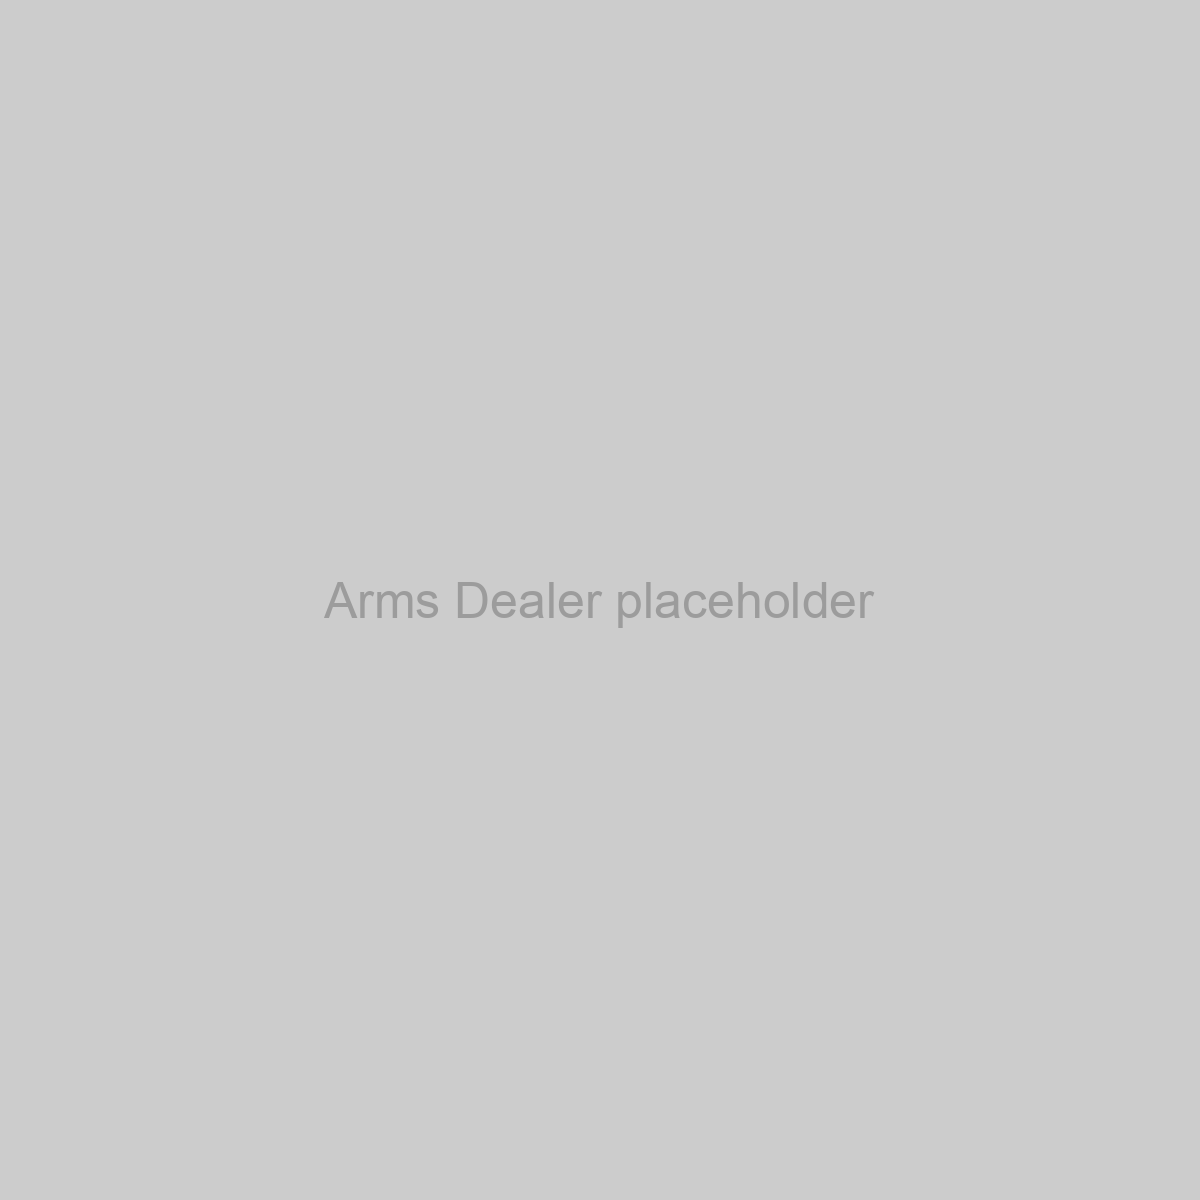 Arms Dealer Placeholder Image